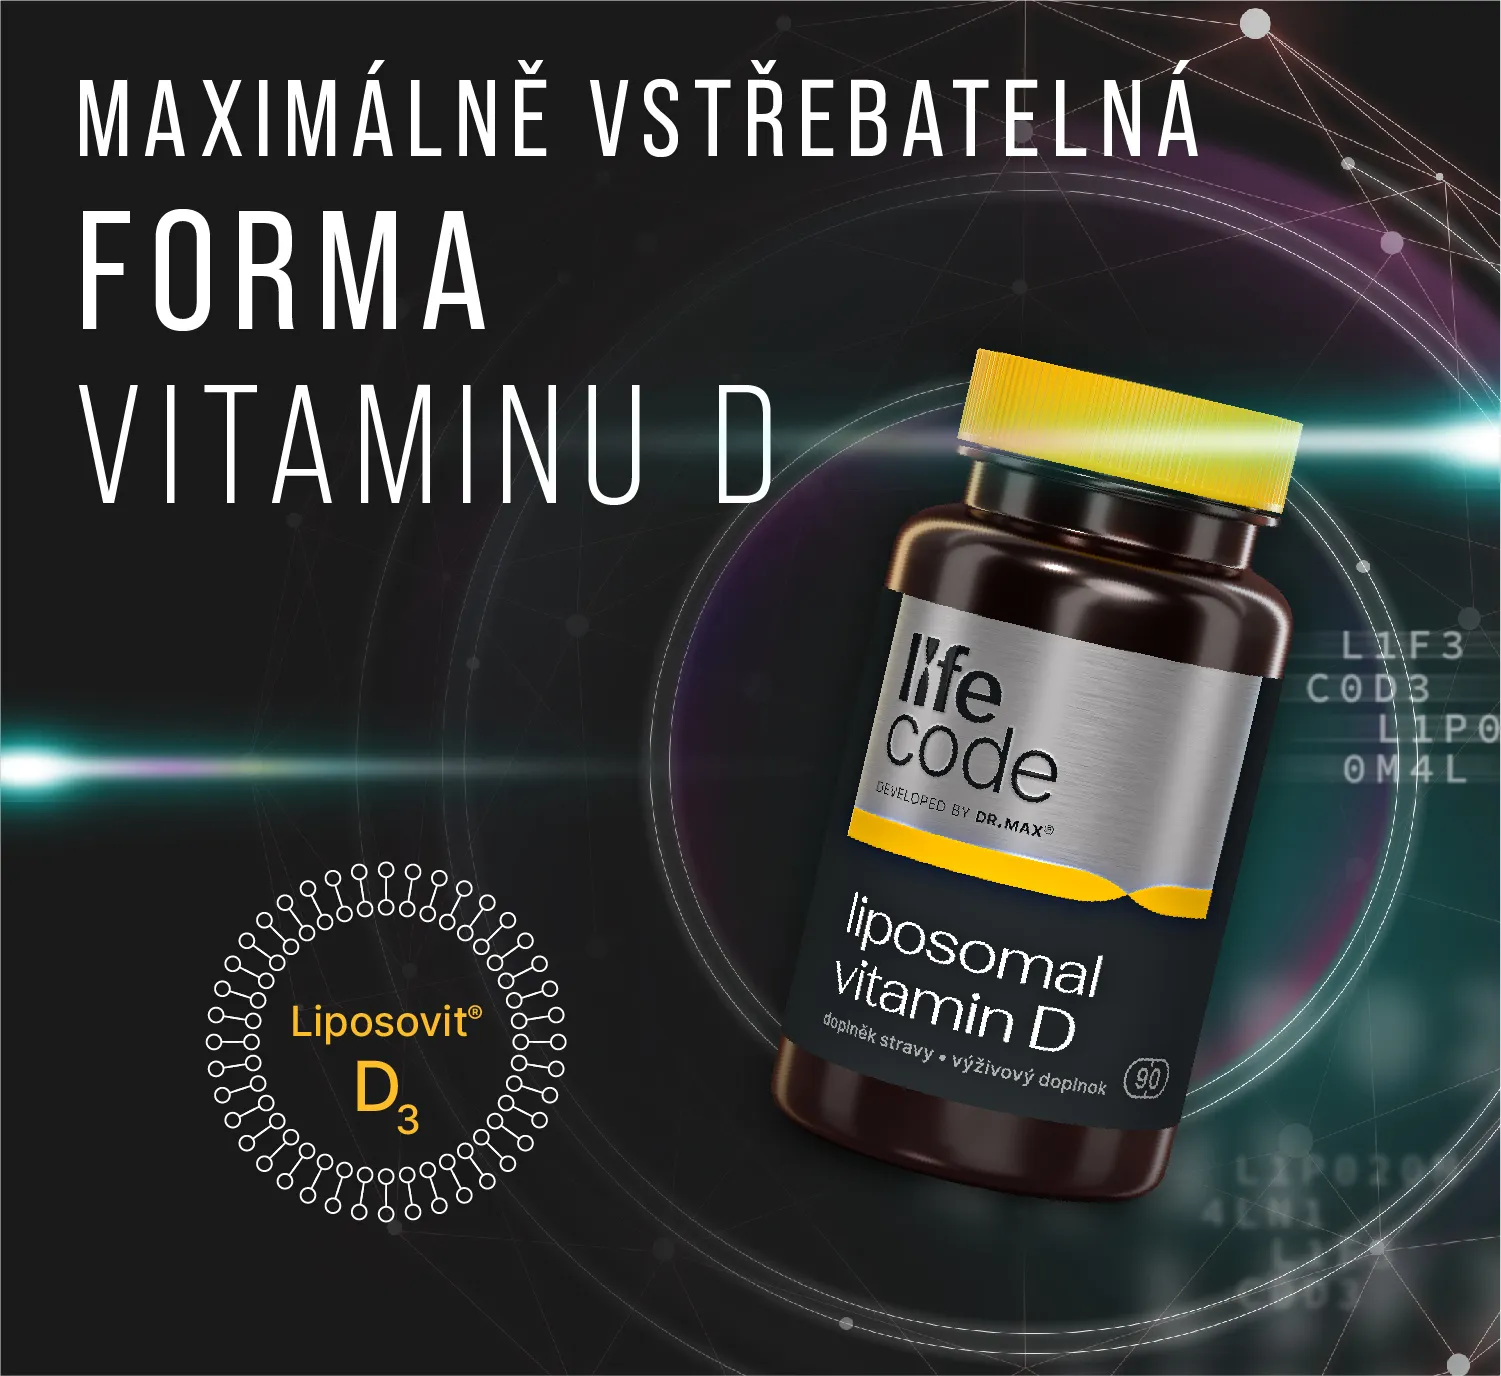 Dr. Max Life Code Liposomal Vitamin D 90 kapslí – Maximálně vstřebatelná forma vitaminu D